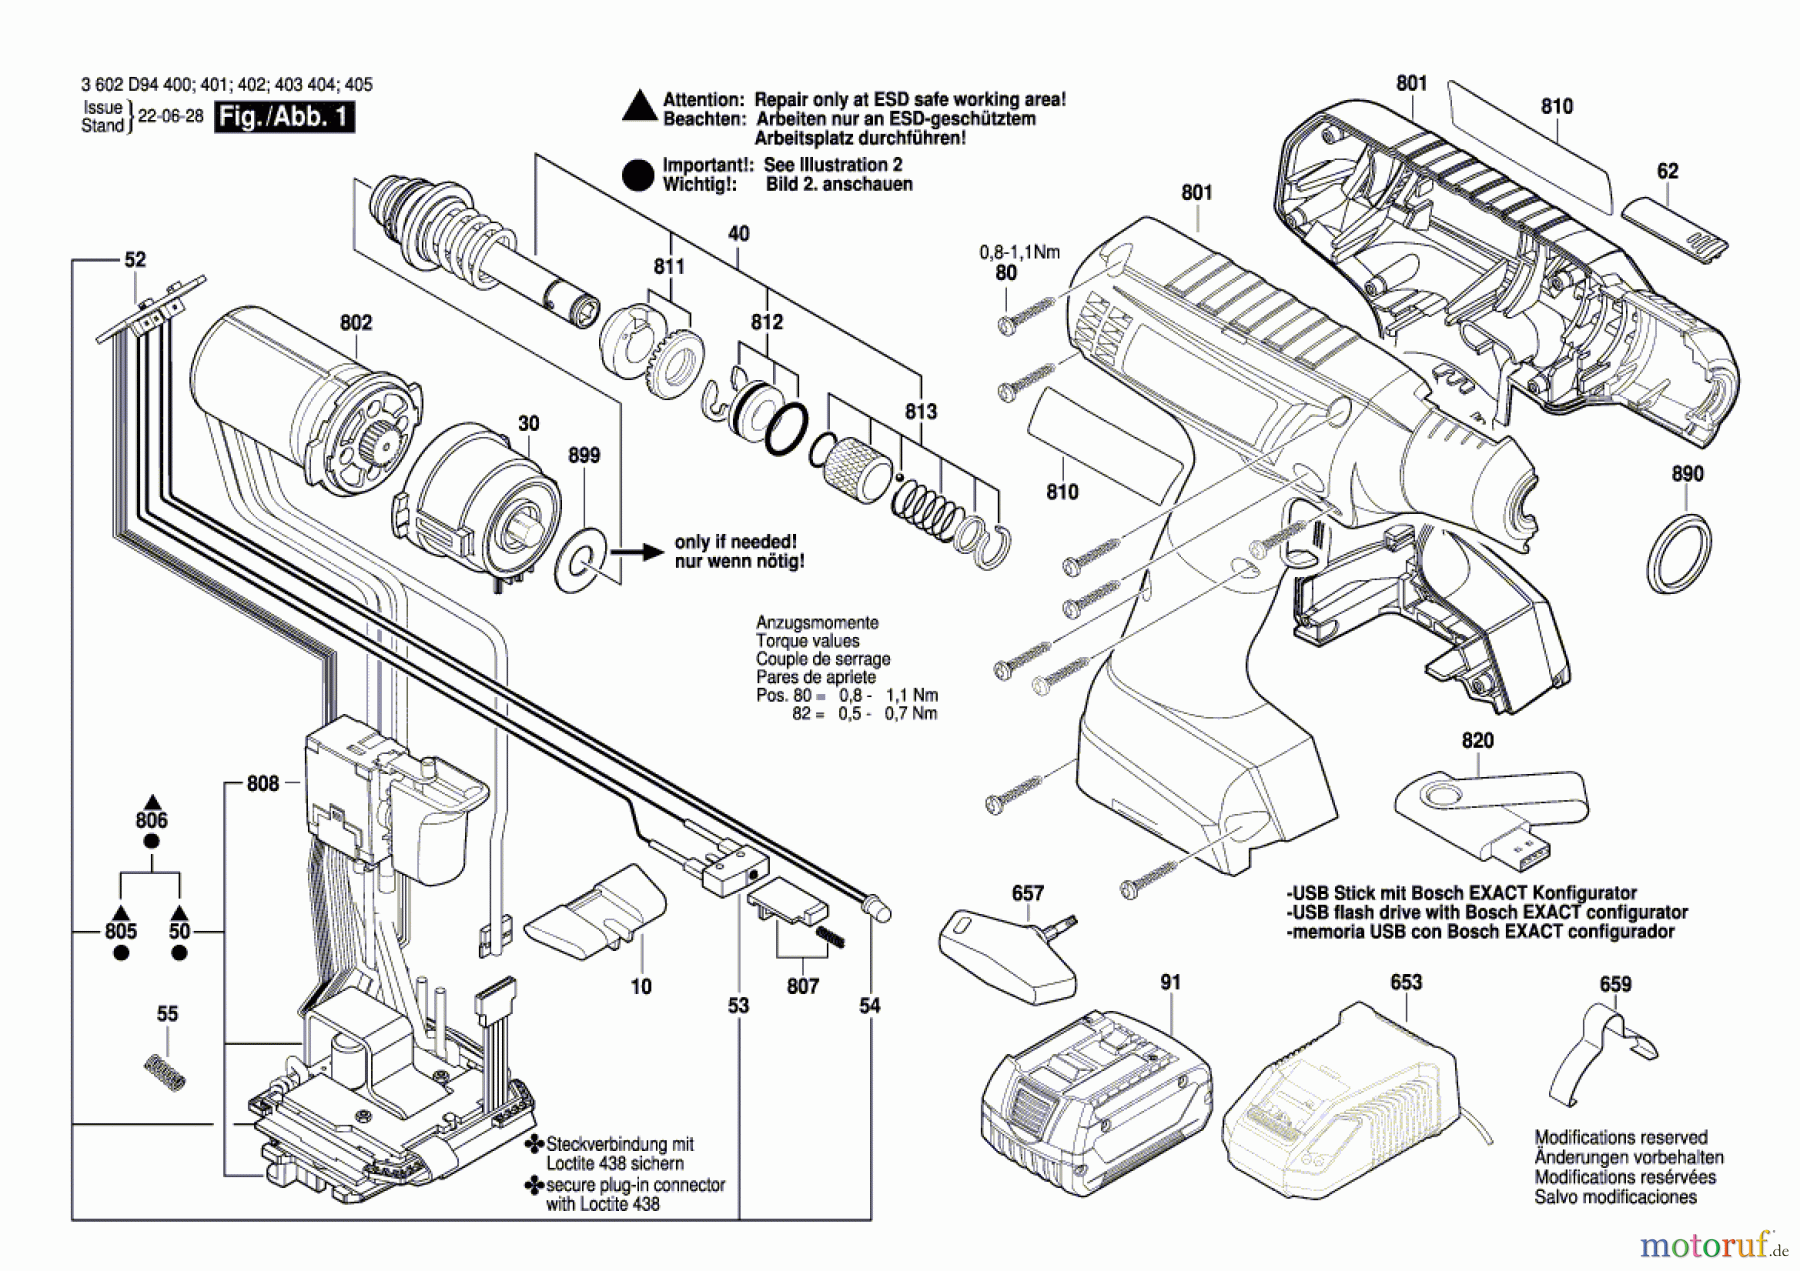  Bosch Akku Werkzeug Iw-Akku-Schrauber EXACT 6-1500 Seite 1